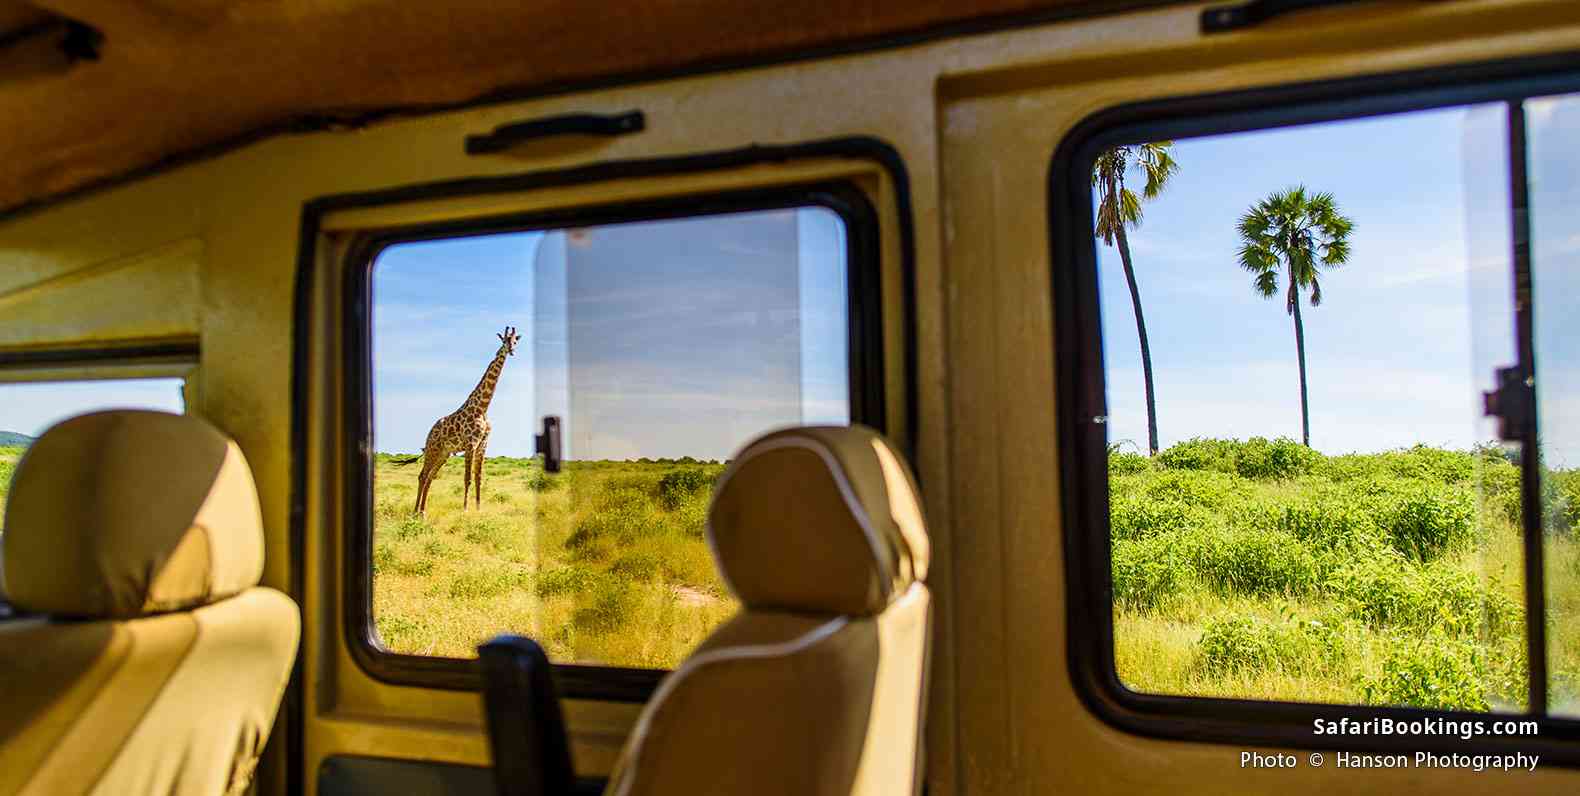 Giraffe seen from a safari vehicle